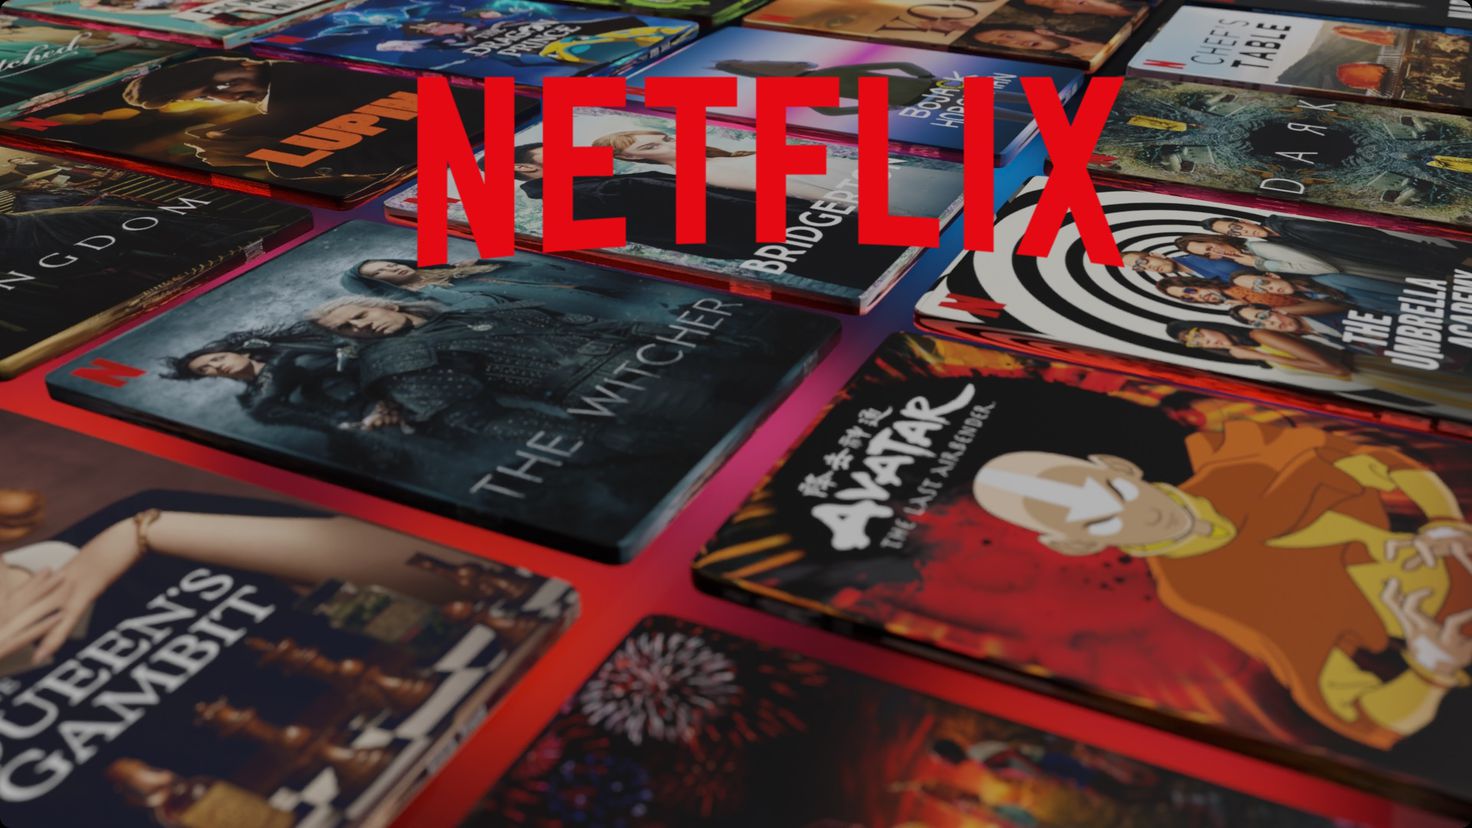 Netflix planea subir los precios una vez más - Meristation